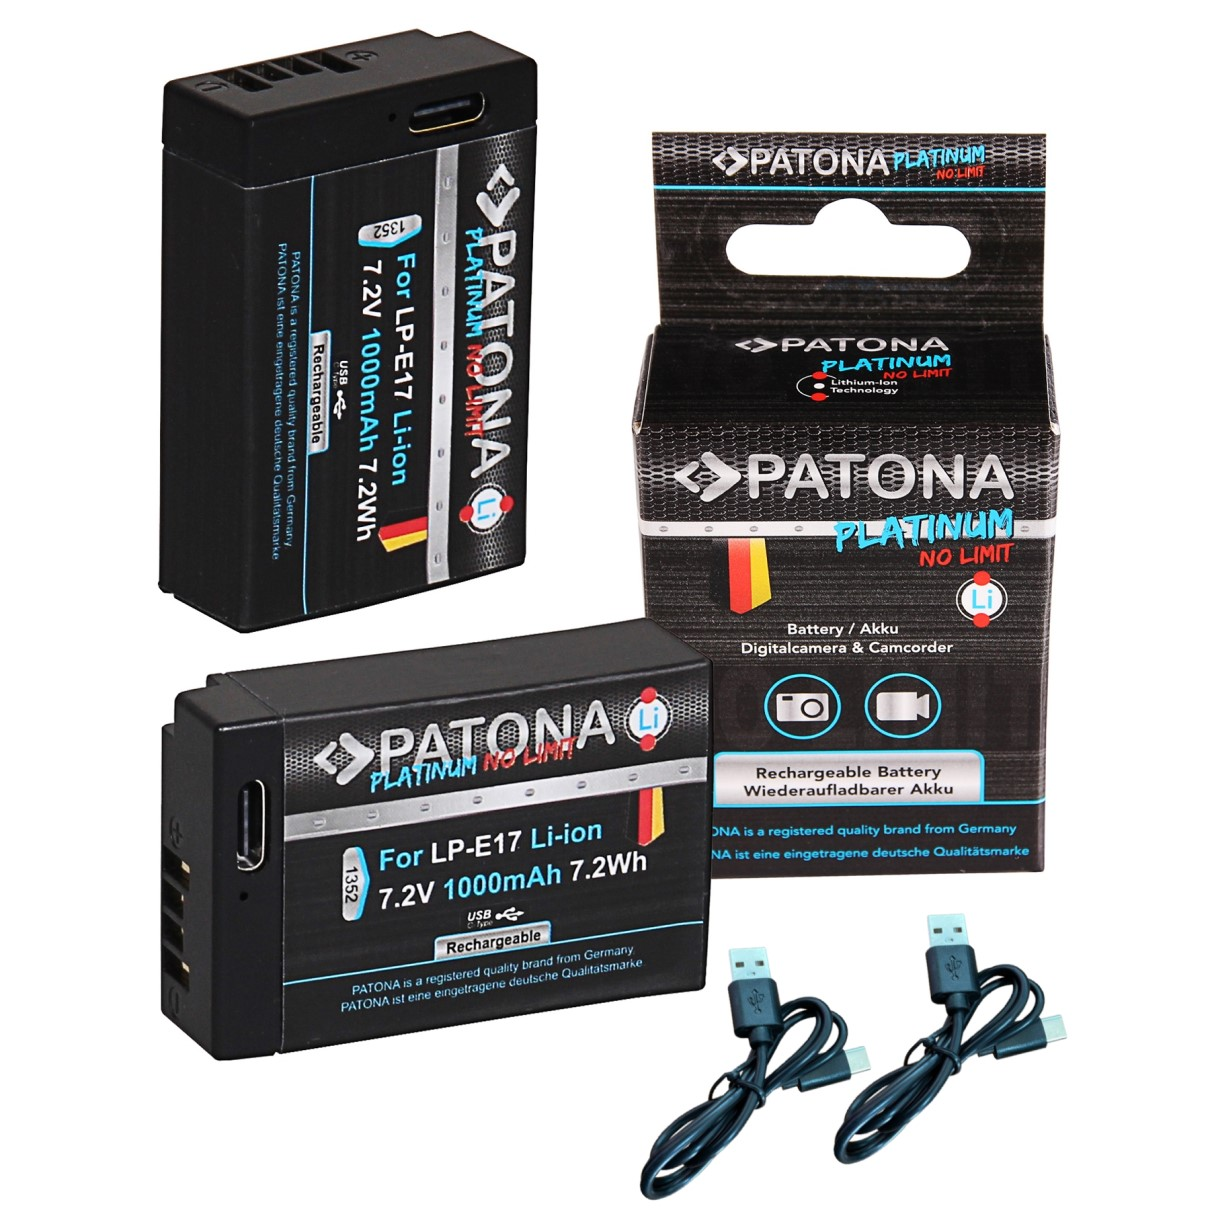 PATONA 2x Platinum Akku Volt, Ersatzakku, LP-E17 7.2 Li-Ion für 1000mAh 